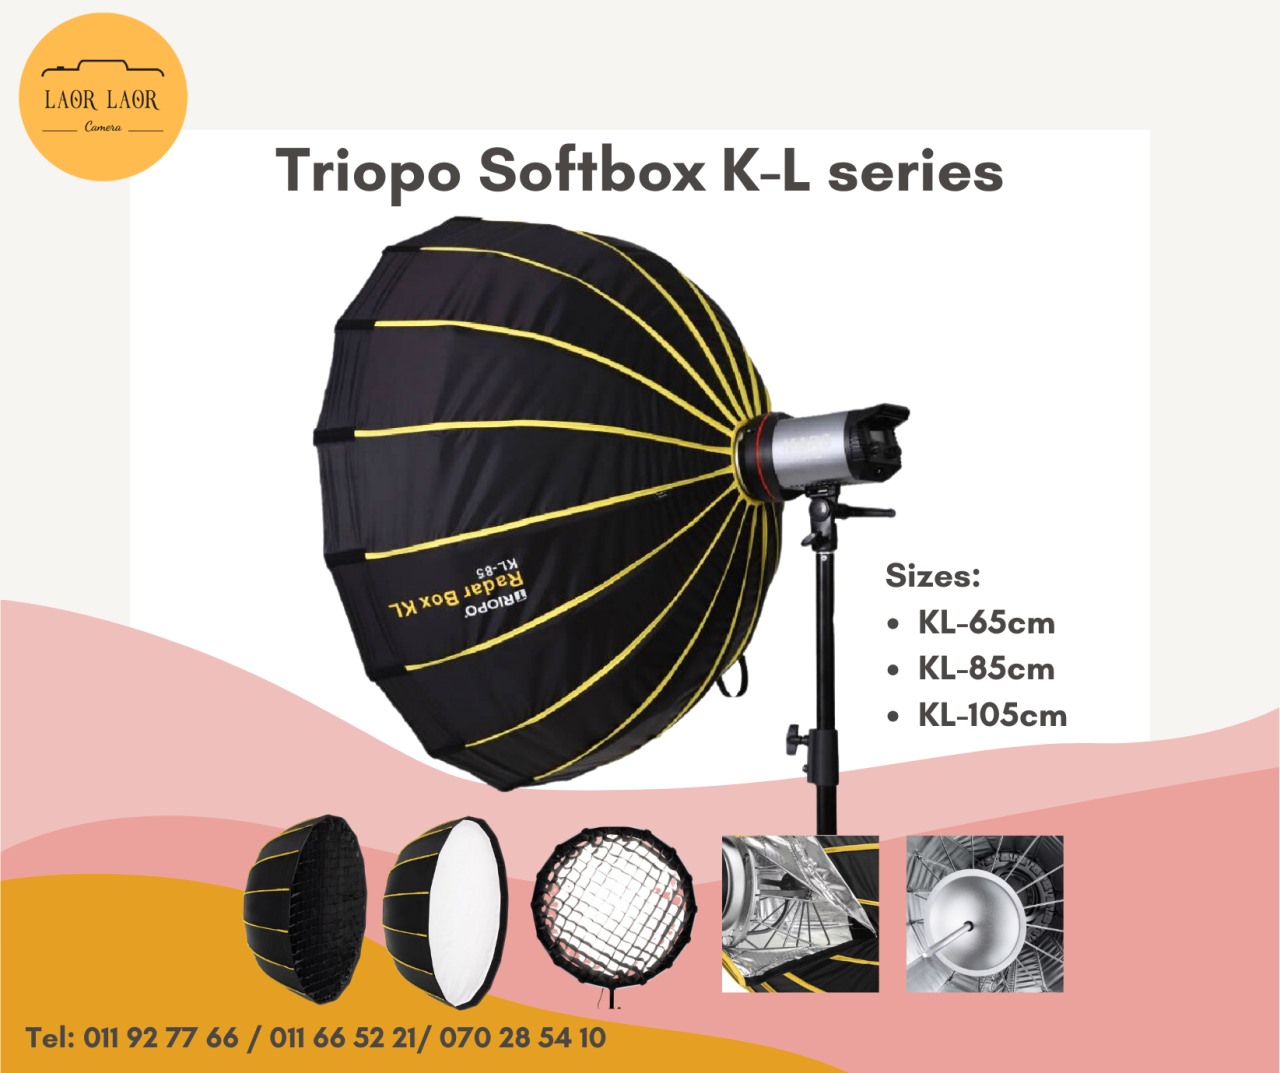 TRIOPO Softbo KL-105, KL-85, KL-65